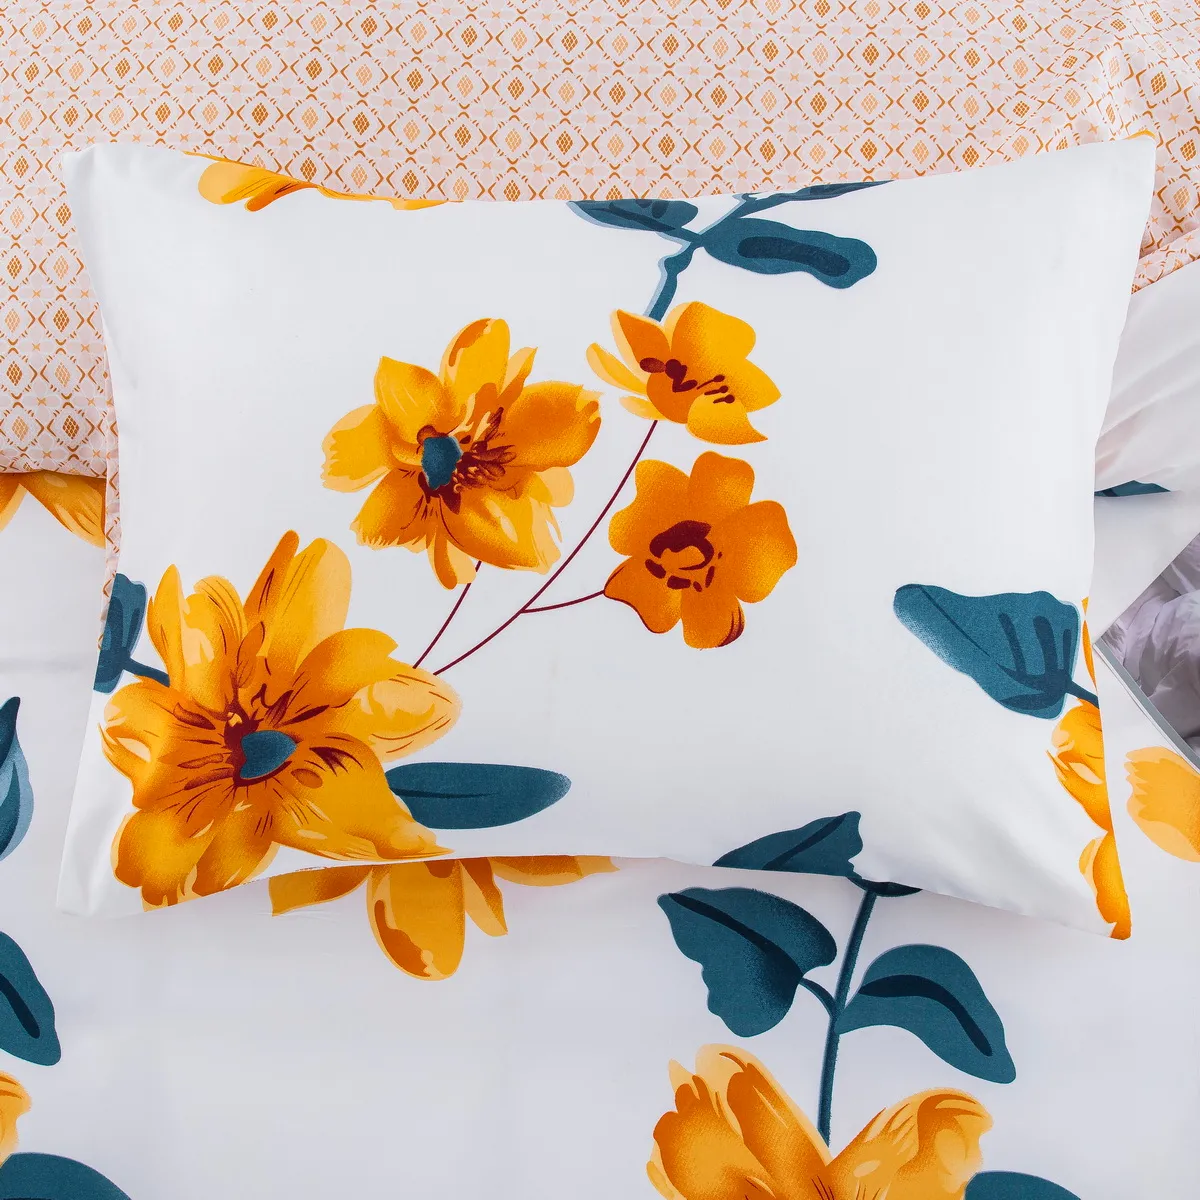 2/3 pz Morbido e confortevole Jacquard Daisy Design Set di biancheria da letto, include copripiumino e federe multicolore big image 1